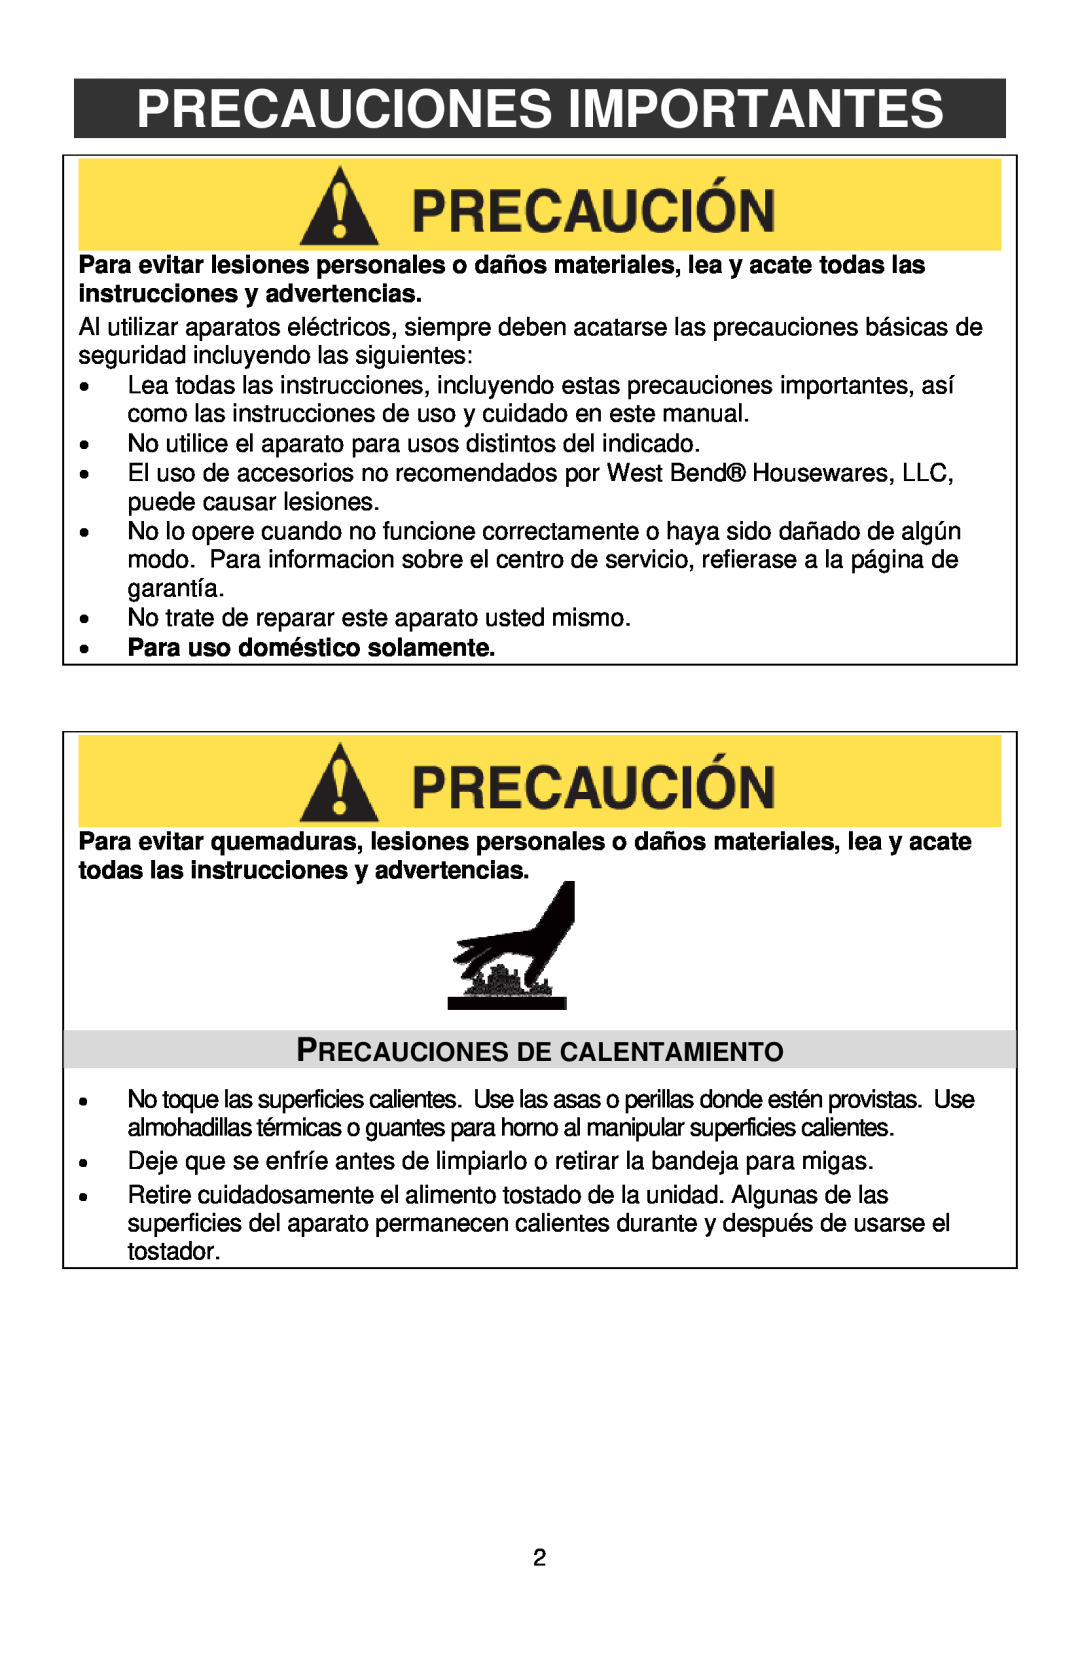 West Bend Infrared Toaster instruction manual Precauciones Importantes, Precauciones De Calentamiento 